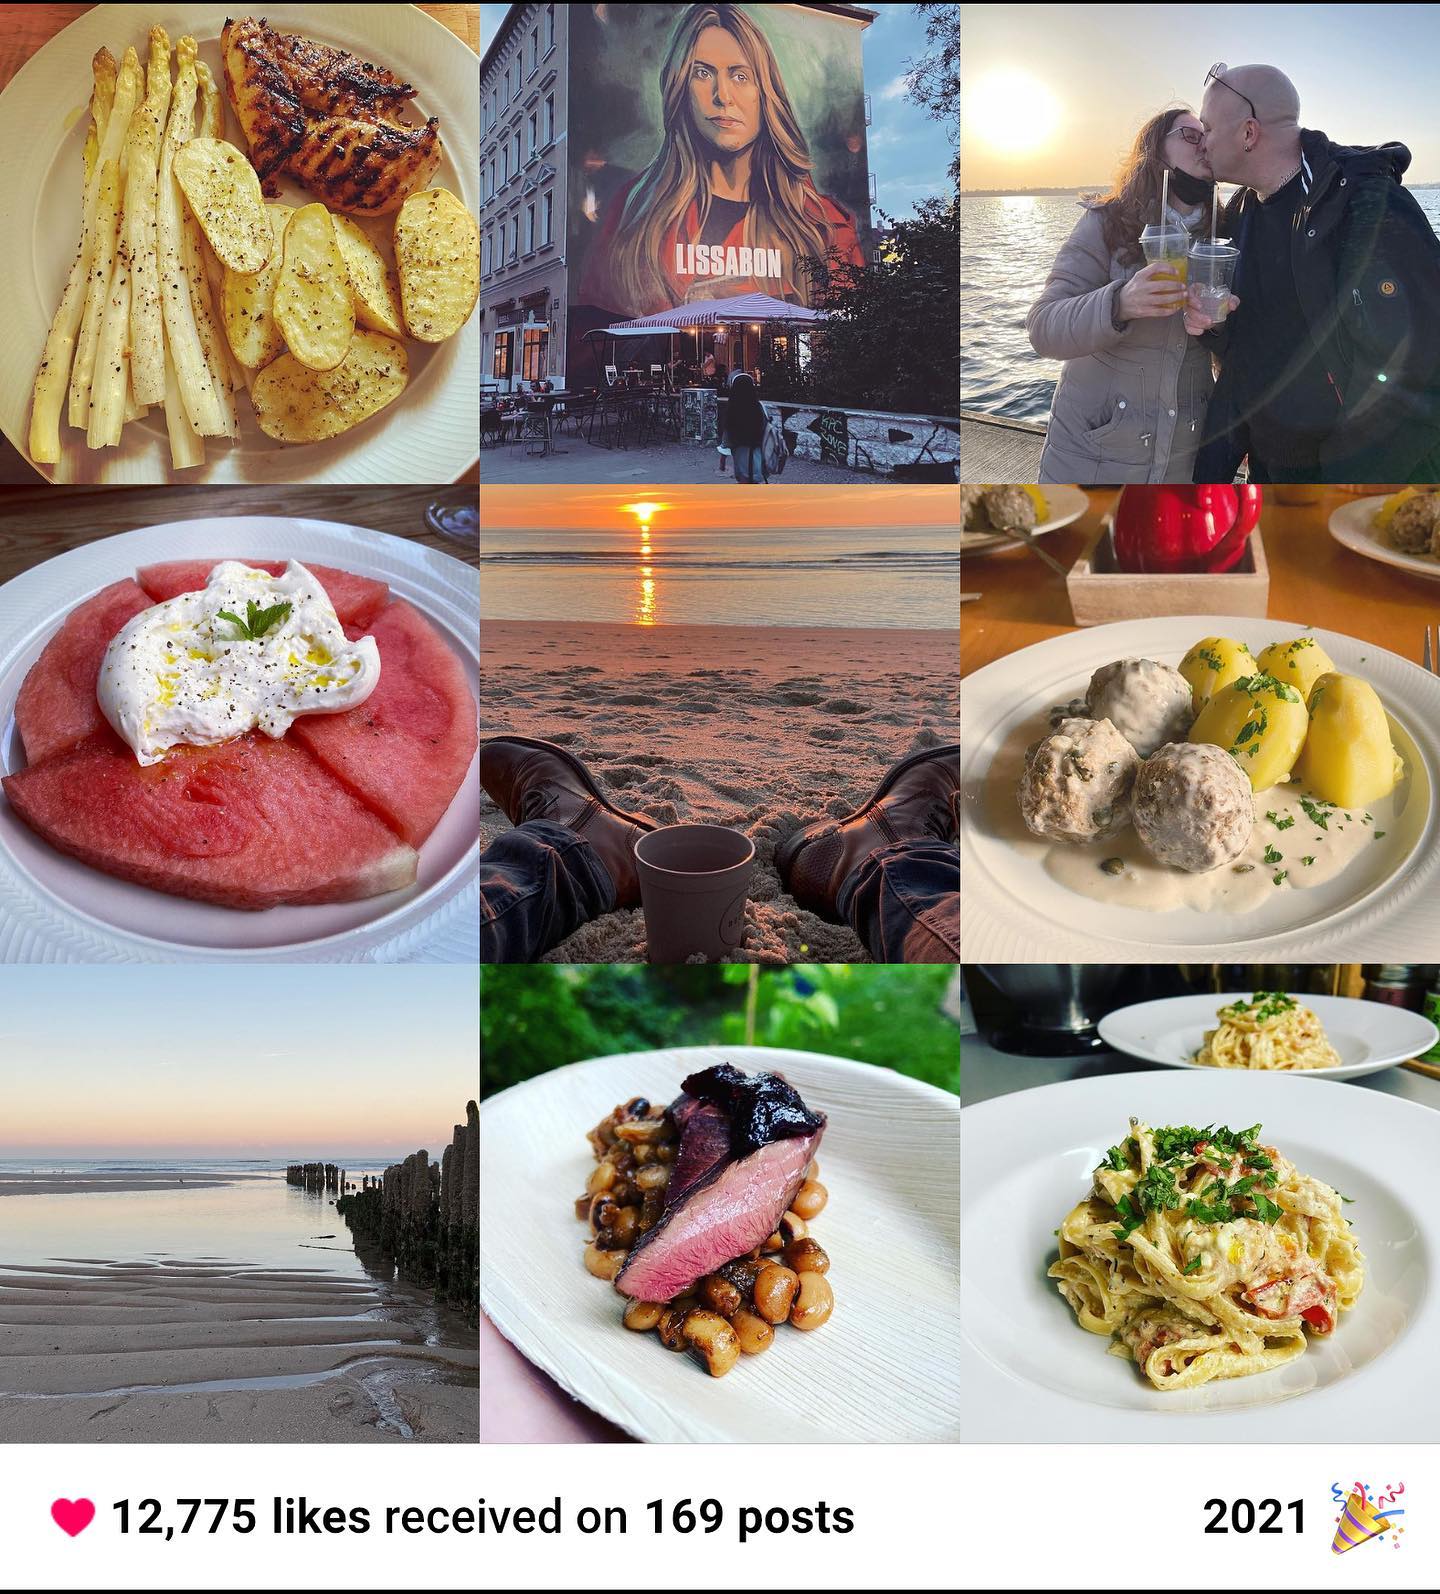 Die beliebtesten Bilder 2021 
Danke für 12775 likes 😘  #bestof #bestofinstagram #bestof2021